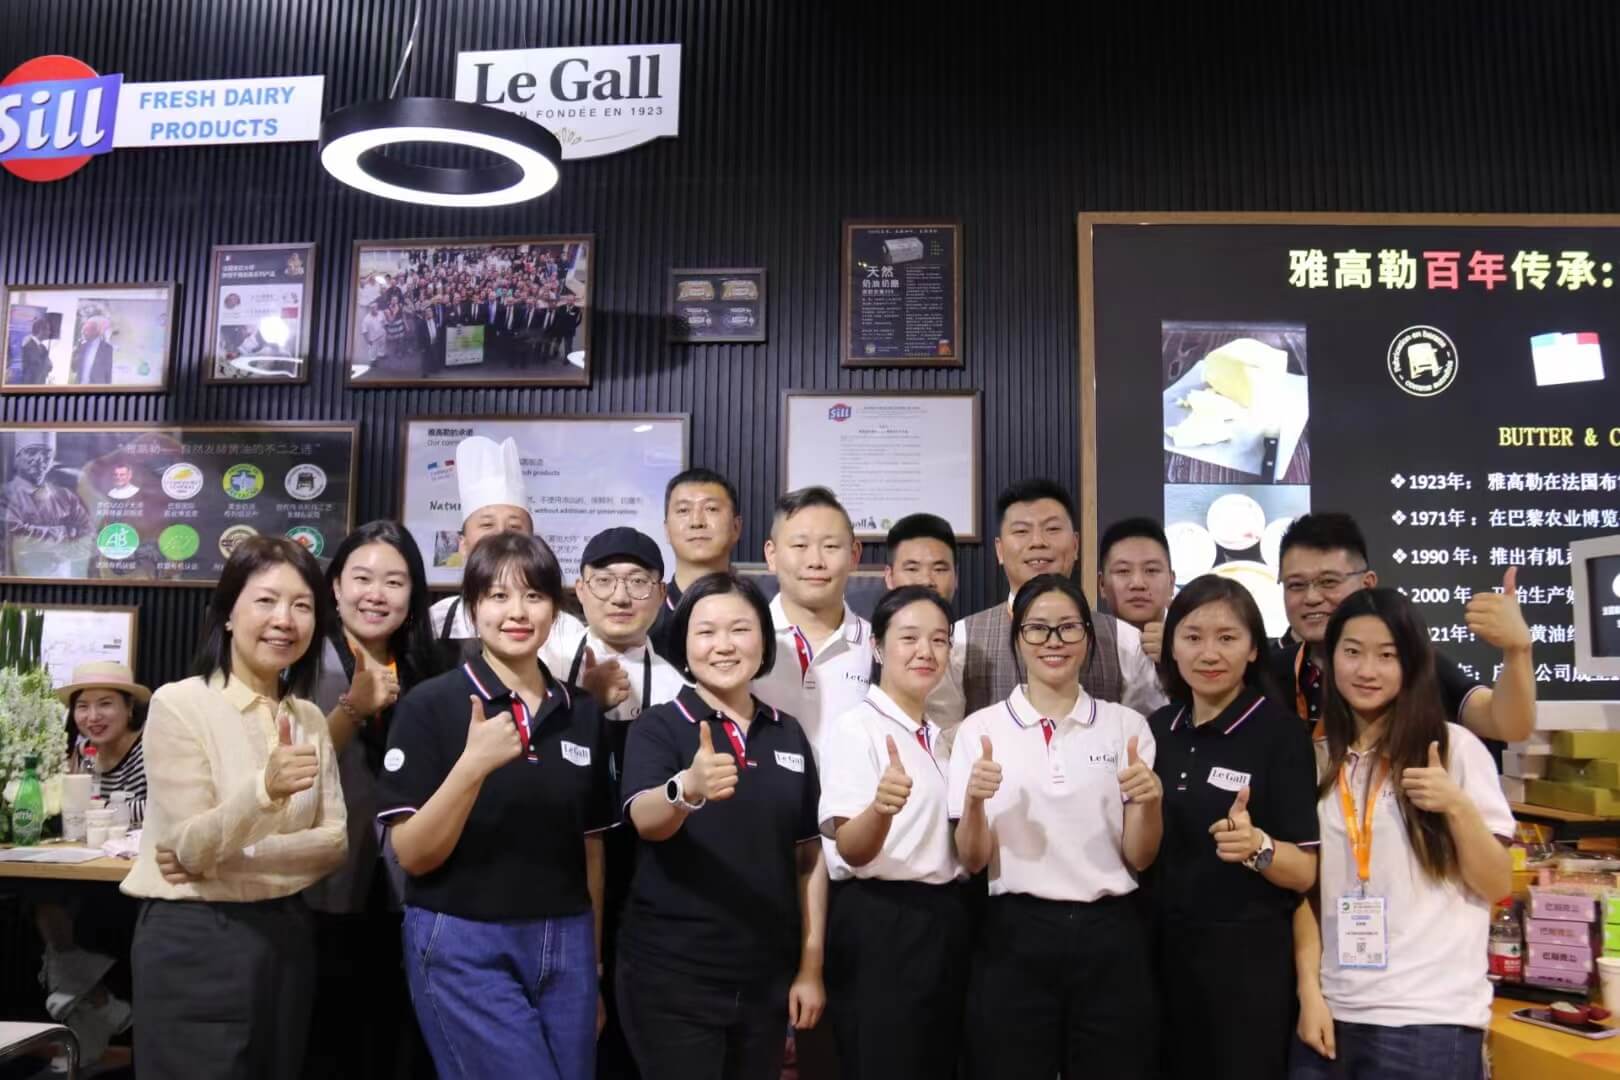 La laiterie centenaire Le Gall est également présente à l'internationnal. Ici lors d'un salon agro alimentaire à Shangai